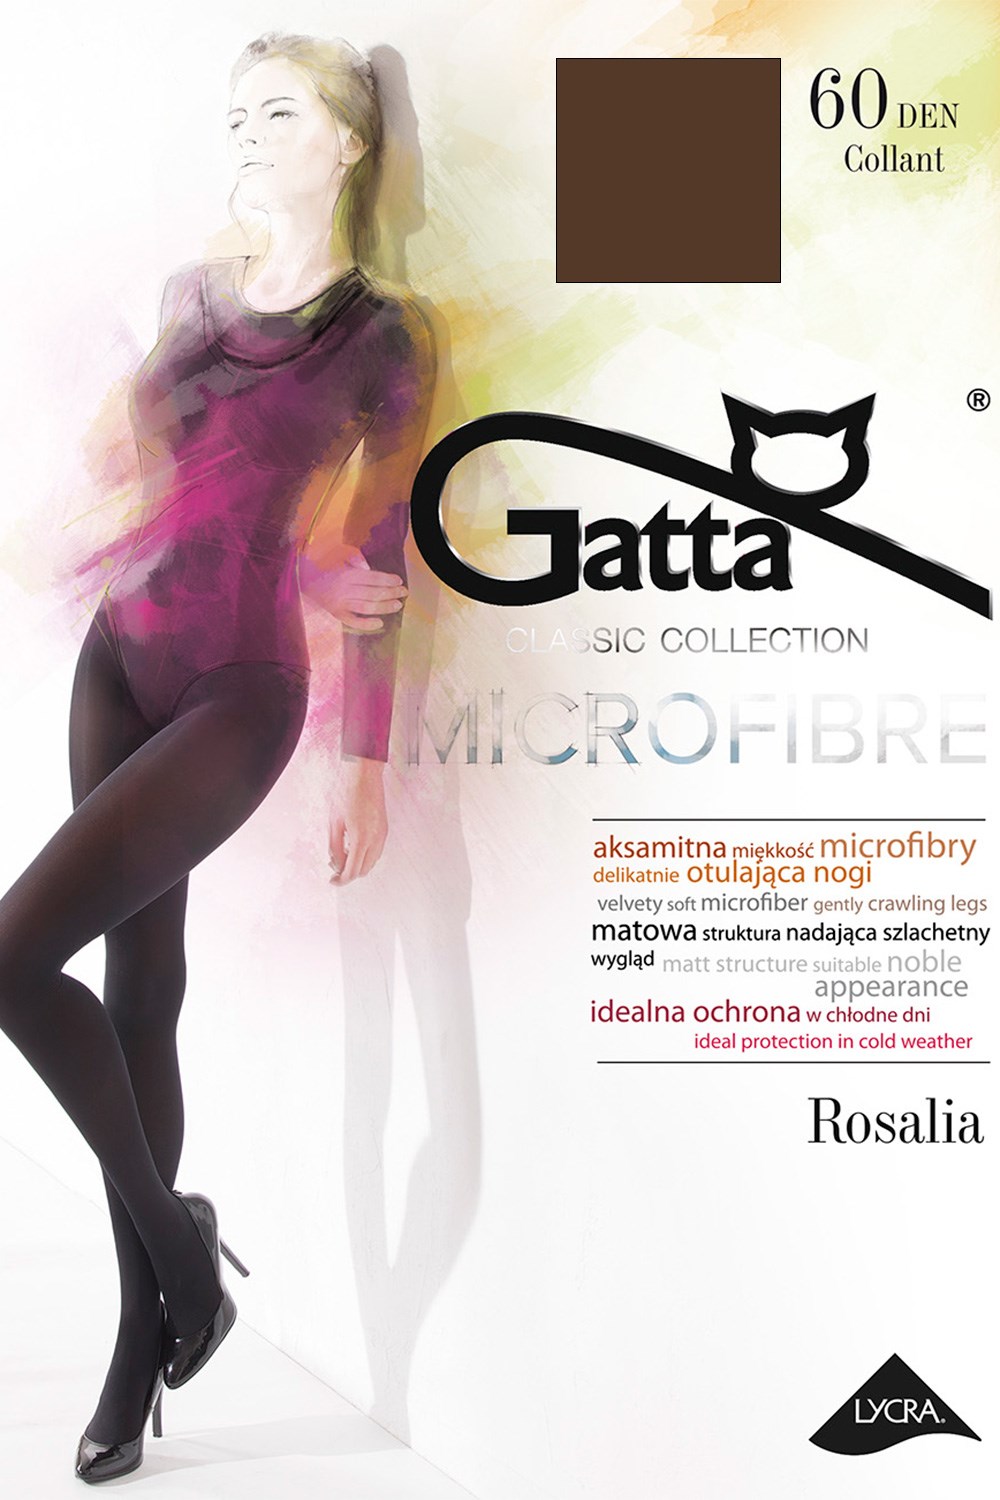 Dámské punčochové kalhoty Gatta Rosalia 60